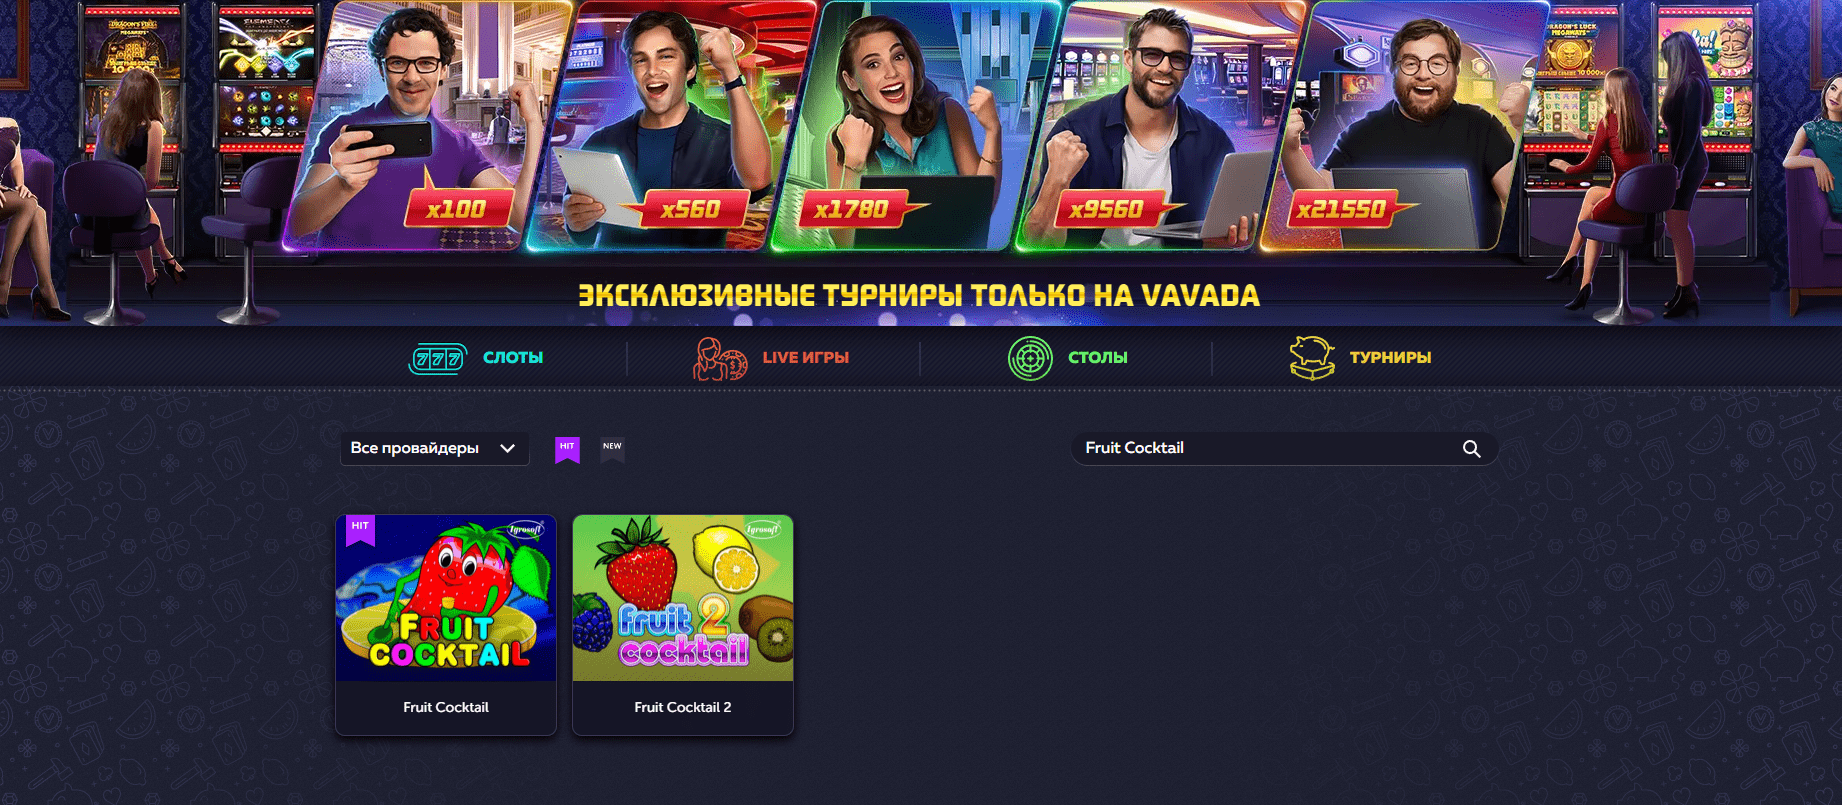 site oficial do Vavada Casino